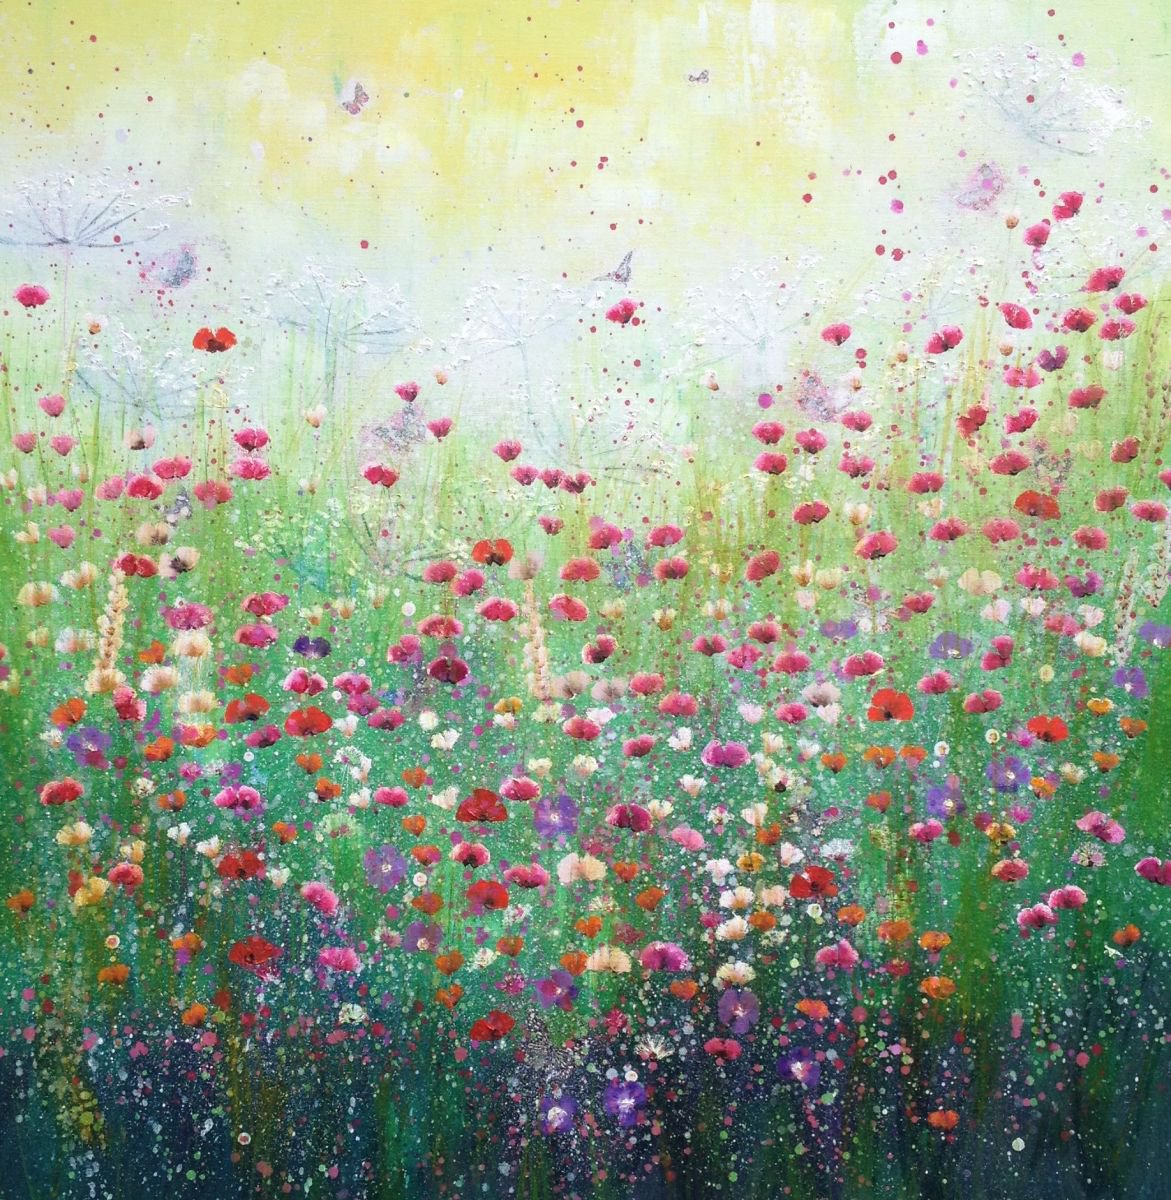 Joys of Spring Oil painting by Laure Bury | Artfinder